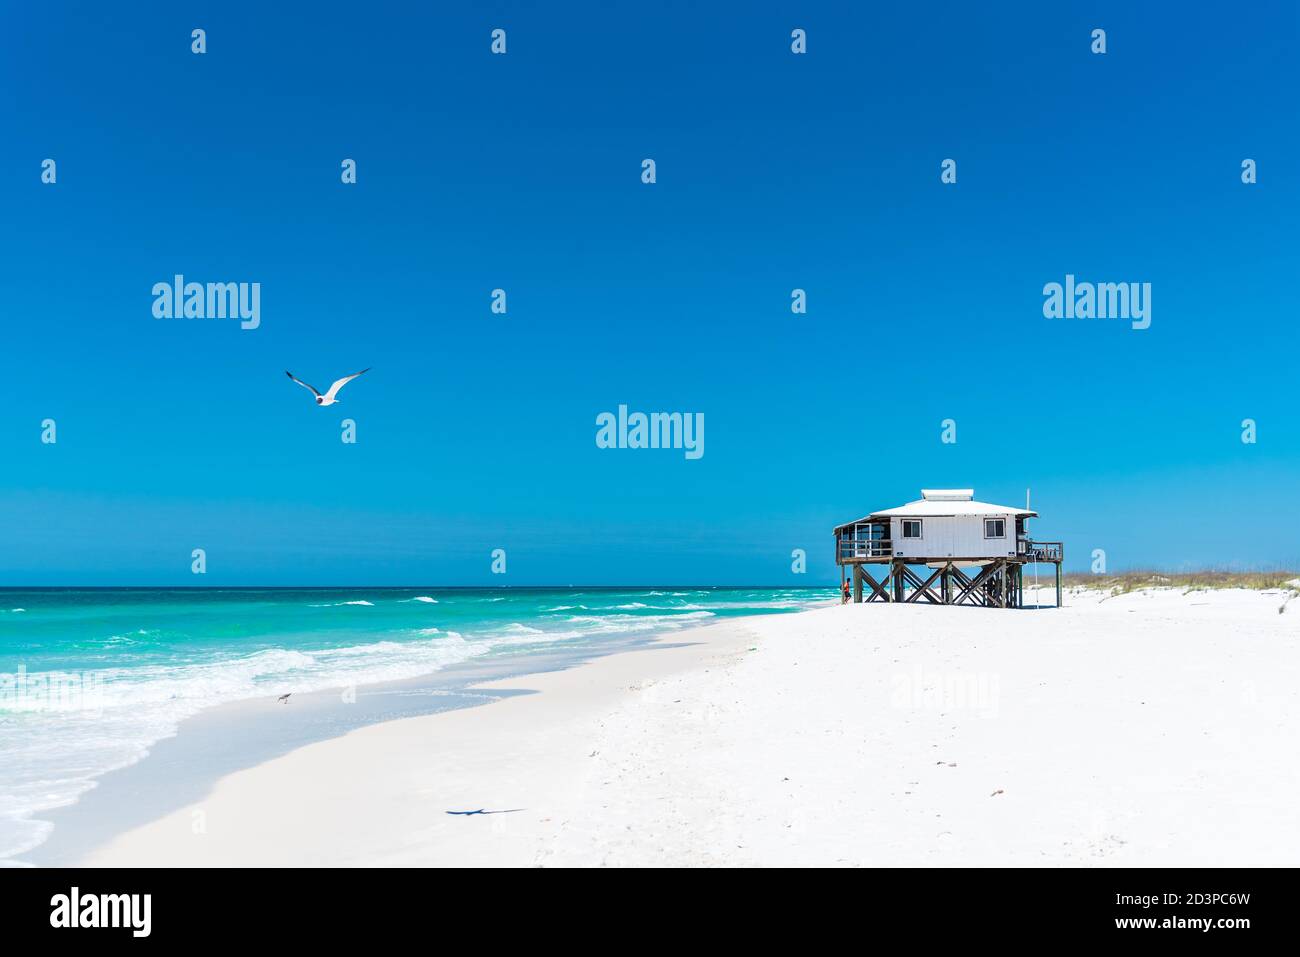 Una casa sulla spiaggia si trova sulla bella spiaggia di sabbia bianca di Shell Island accanto ad un oceano blu chiaro, un gabbiano vola dall'alto Foto Stock